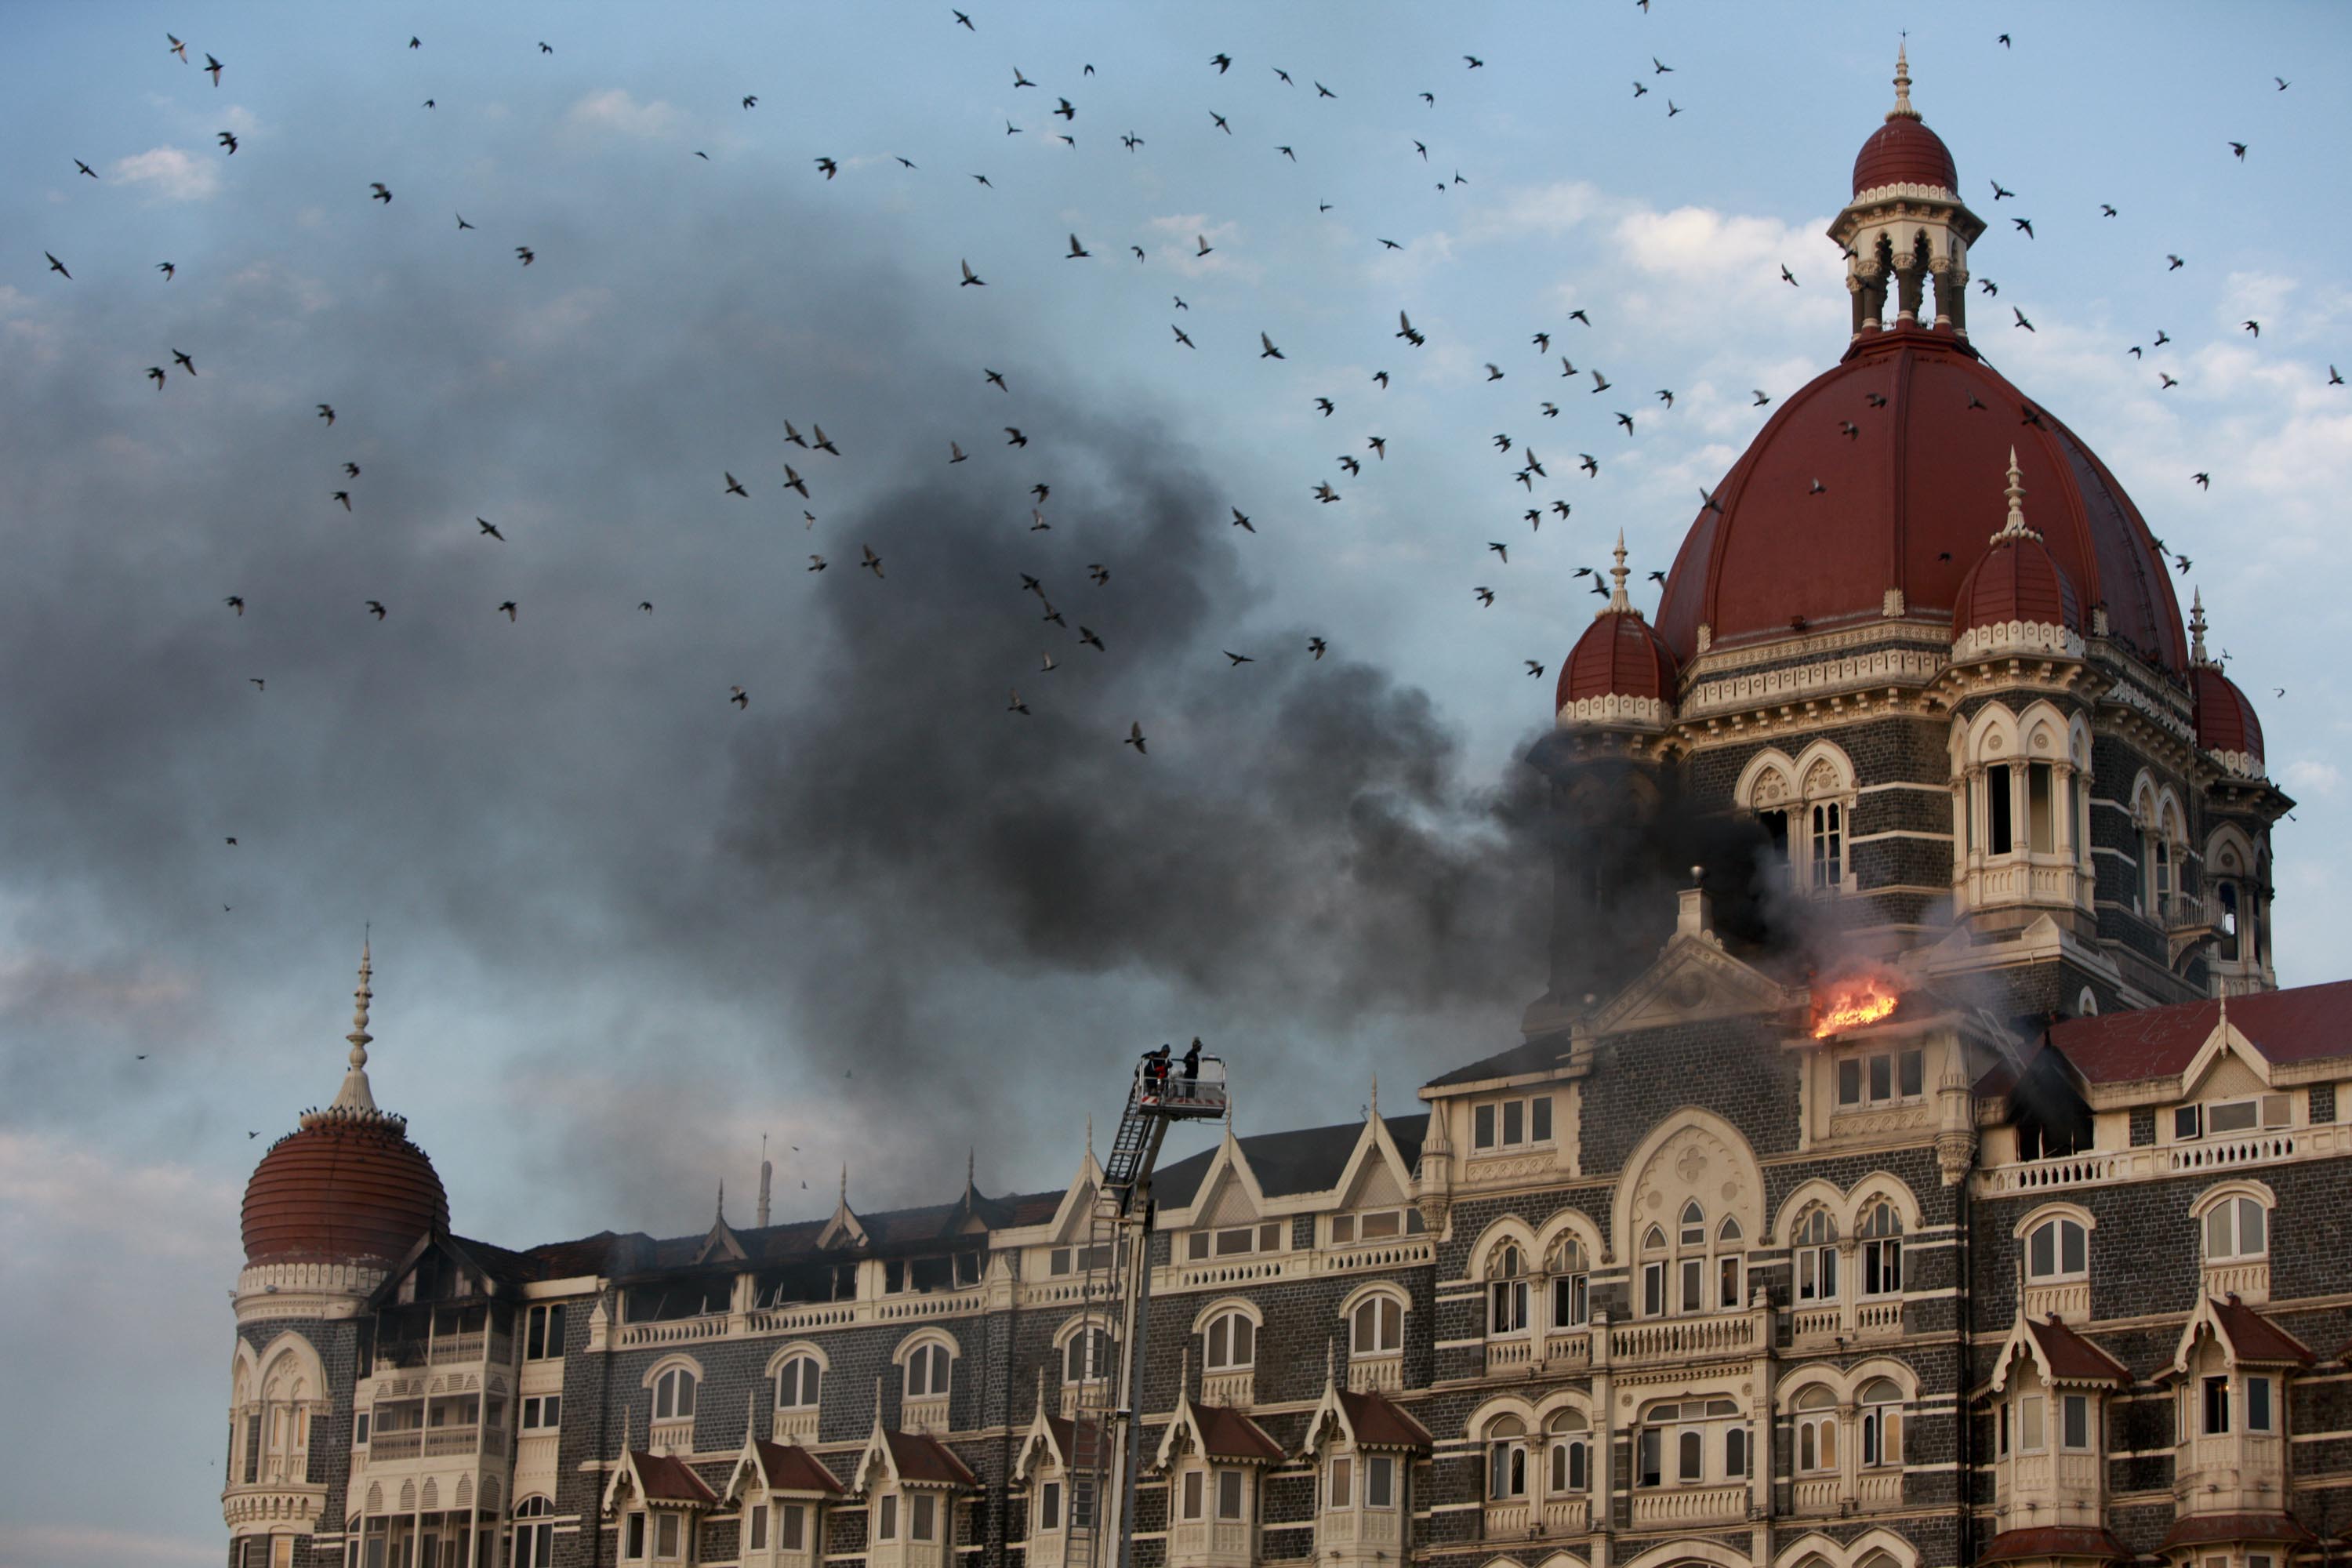 26/11 Mumbai attack